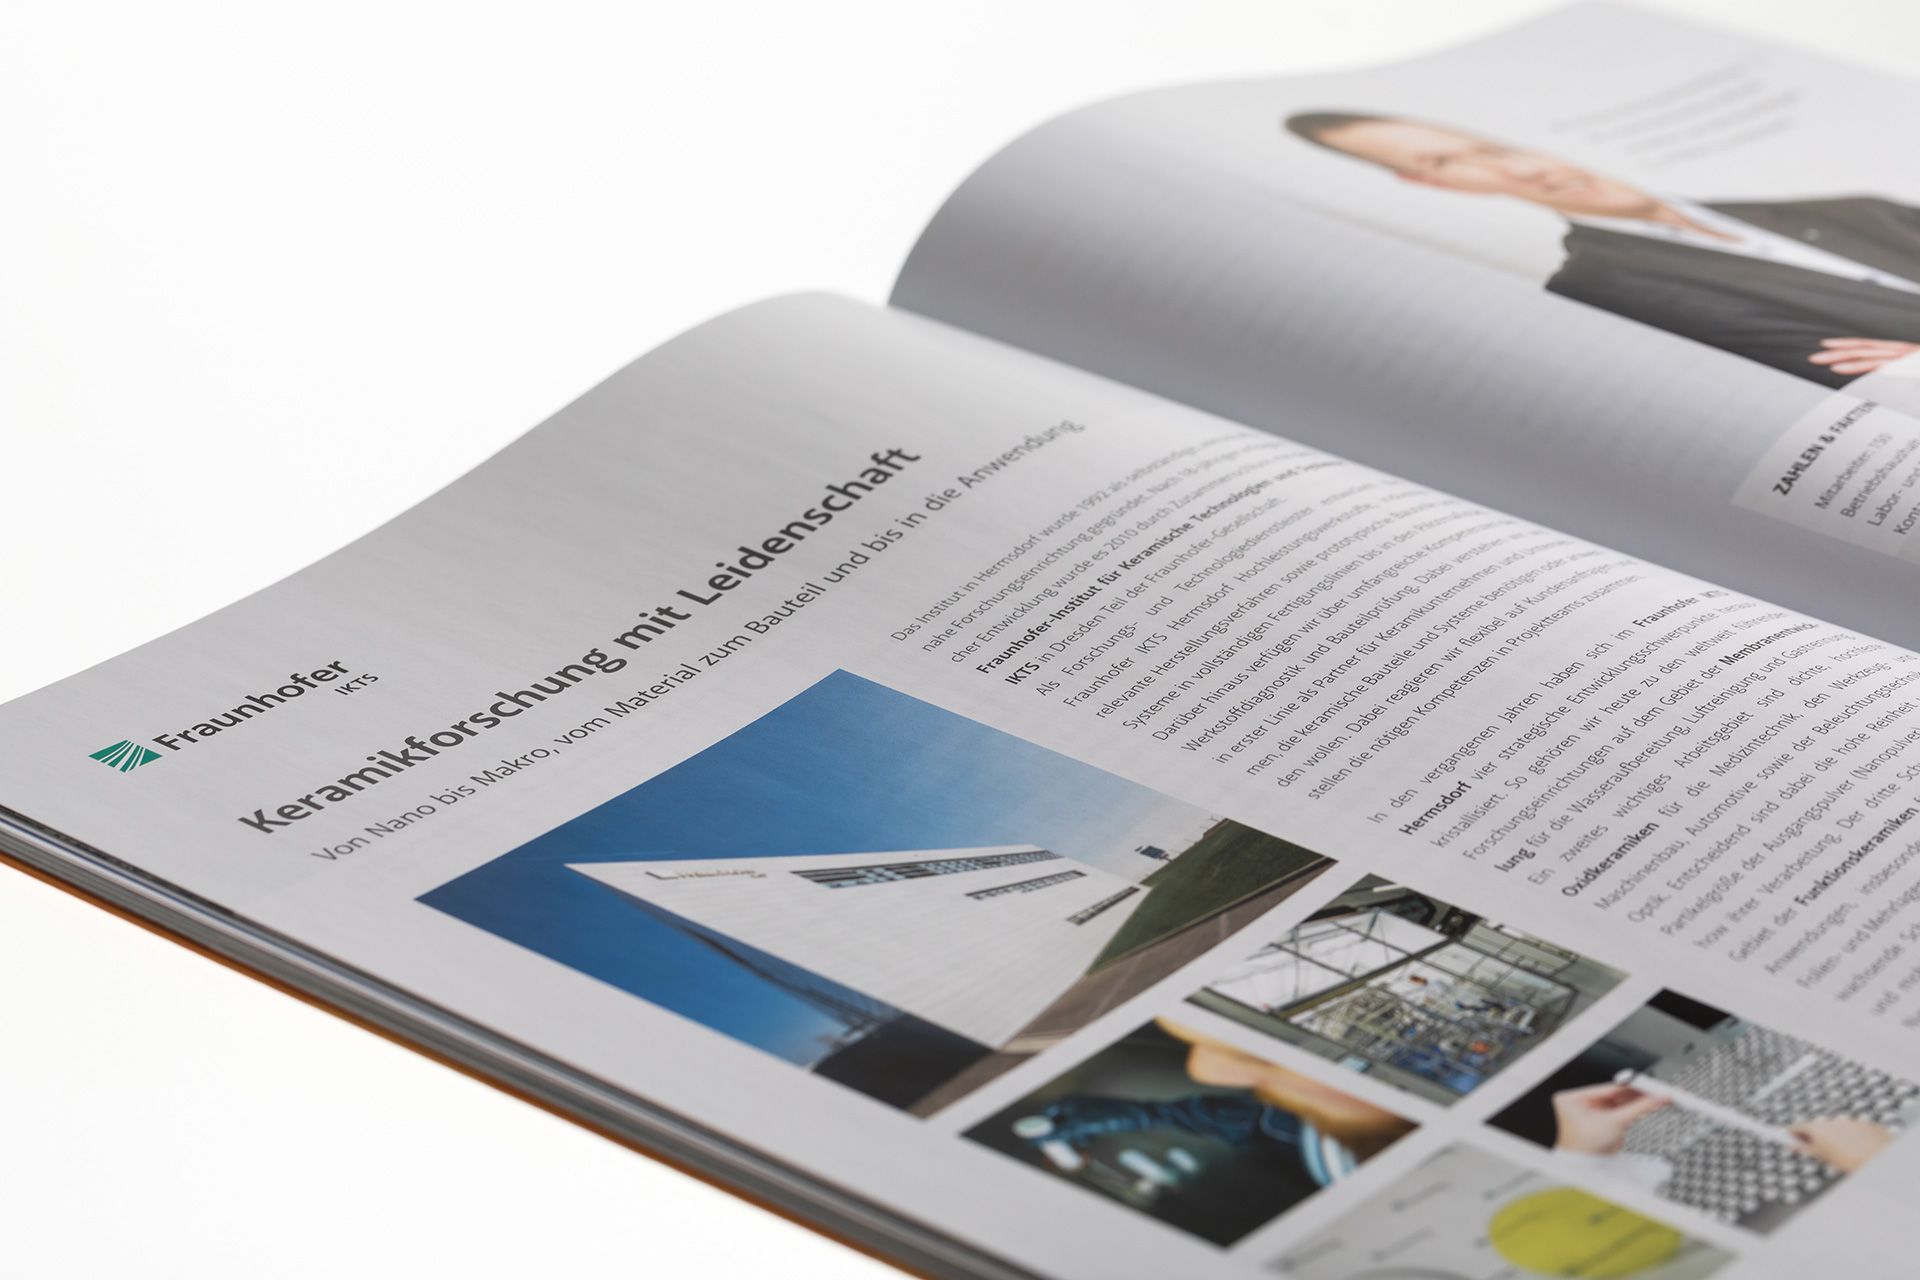 Eine aufgeschlagene Seite der Imagebroschüre für den Standort Tridelta mit seiner Geschichte der Keramikindustrie. Die designerei Werbeagentur entwickelte das Editorial Design.